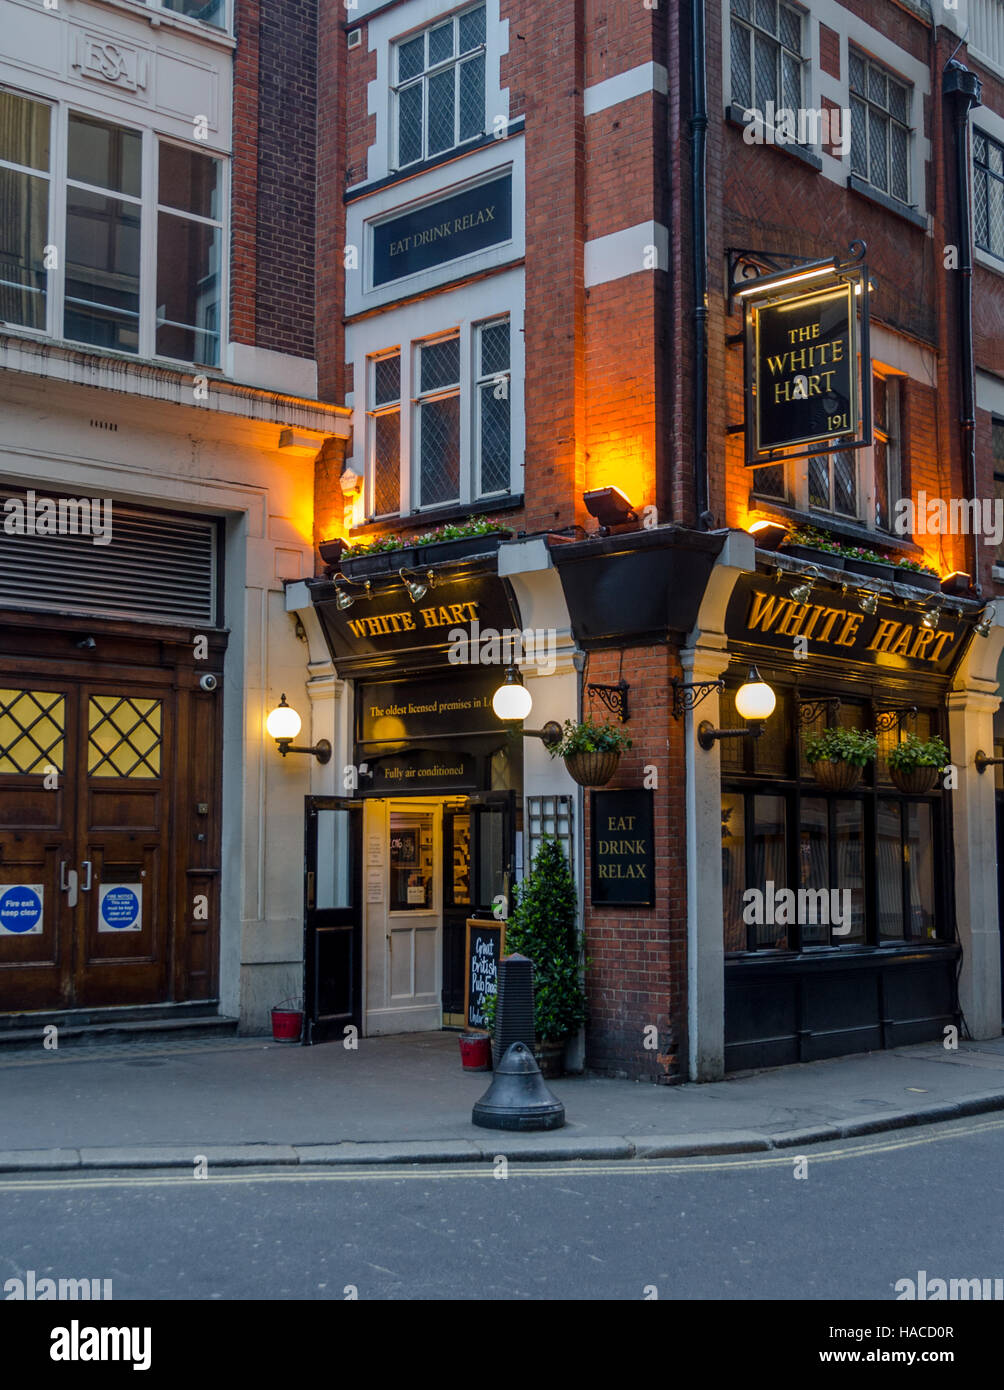 The White Hart pub, London, England, UK Stock Photo